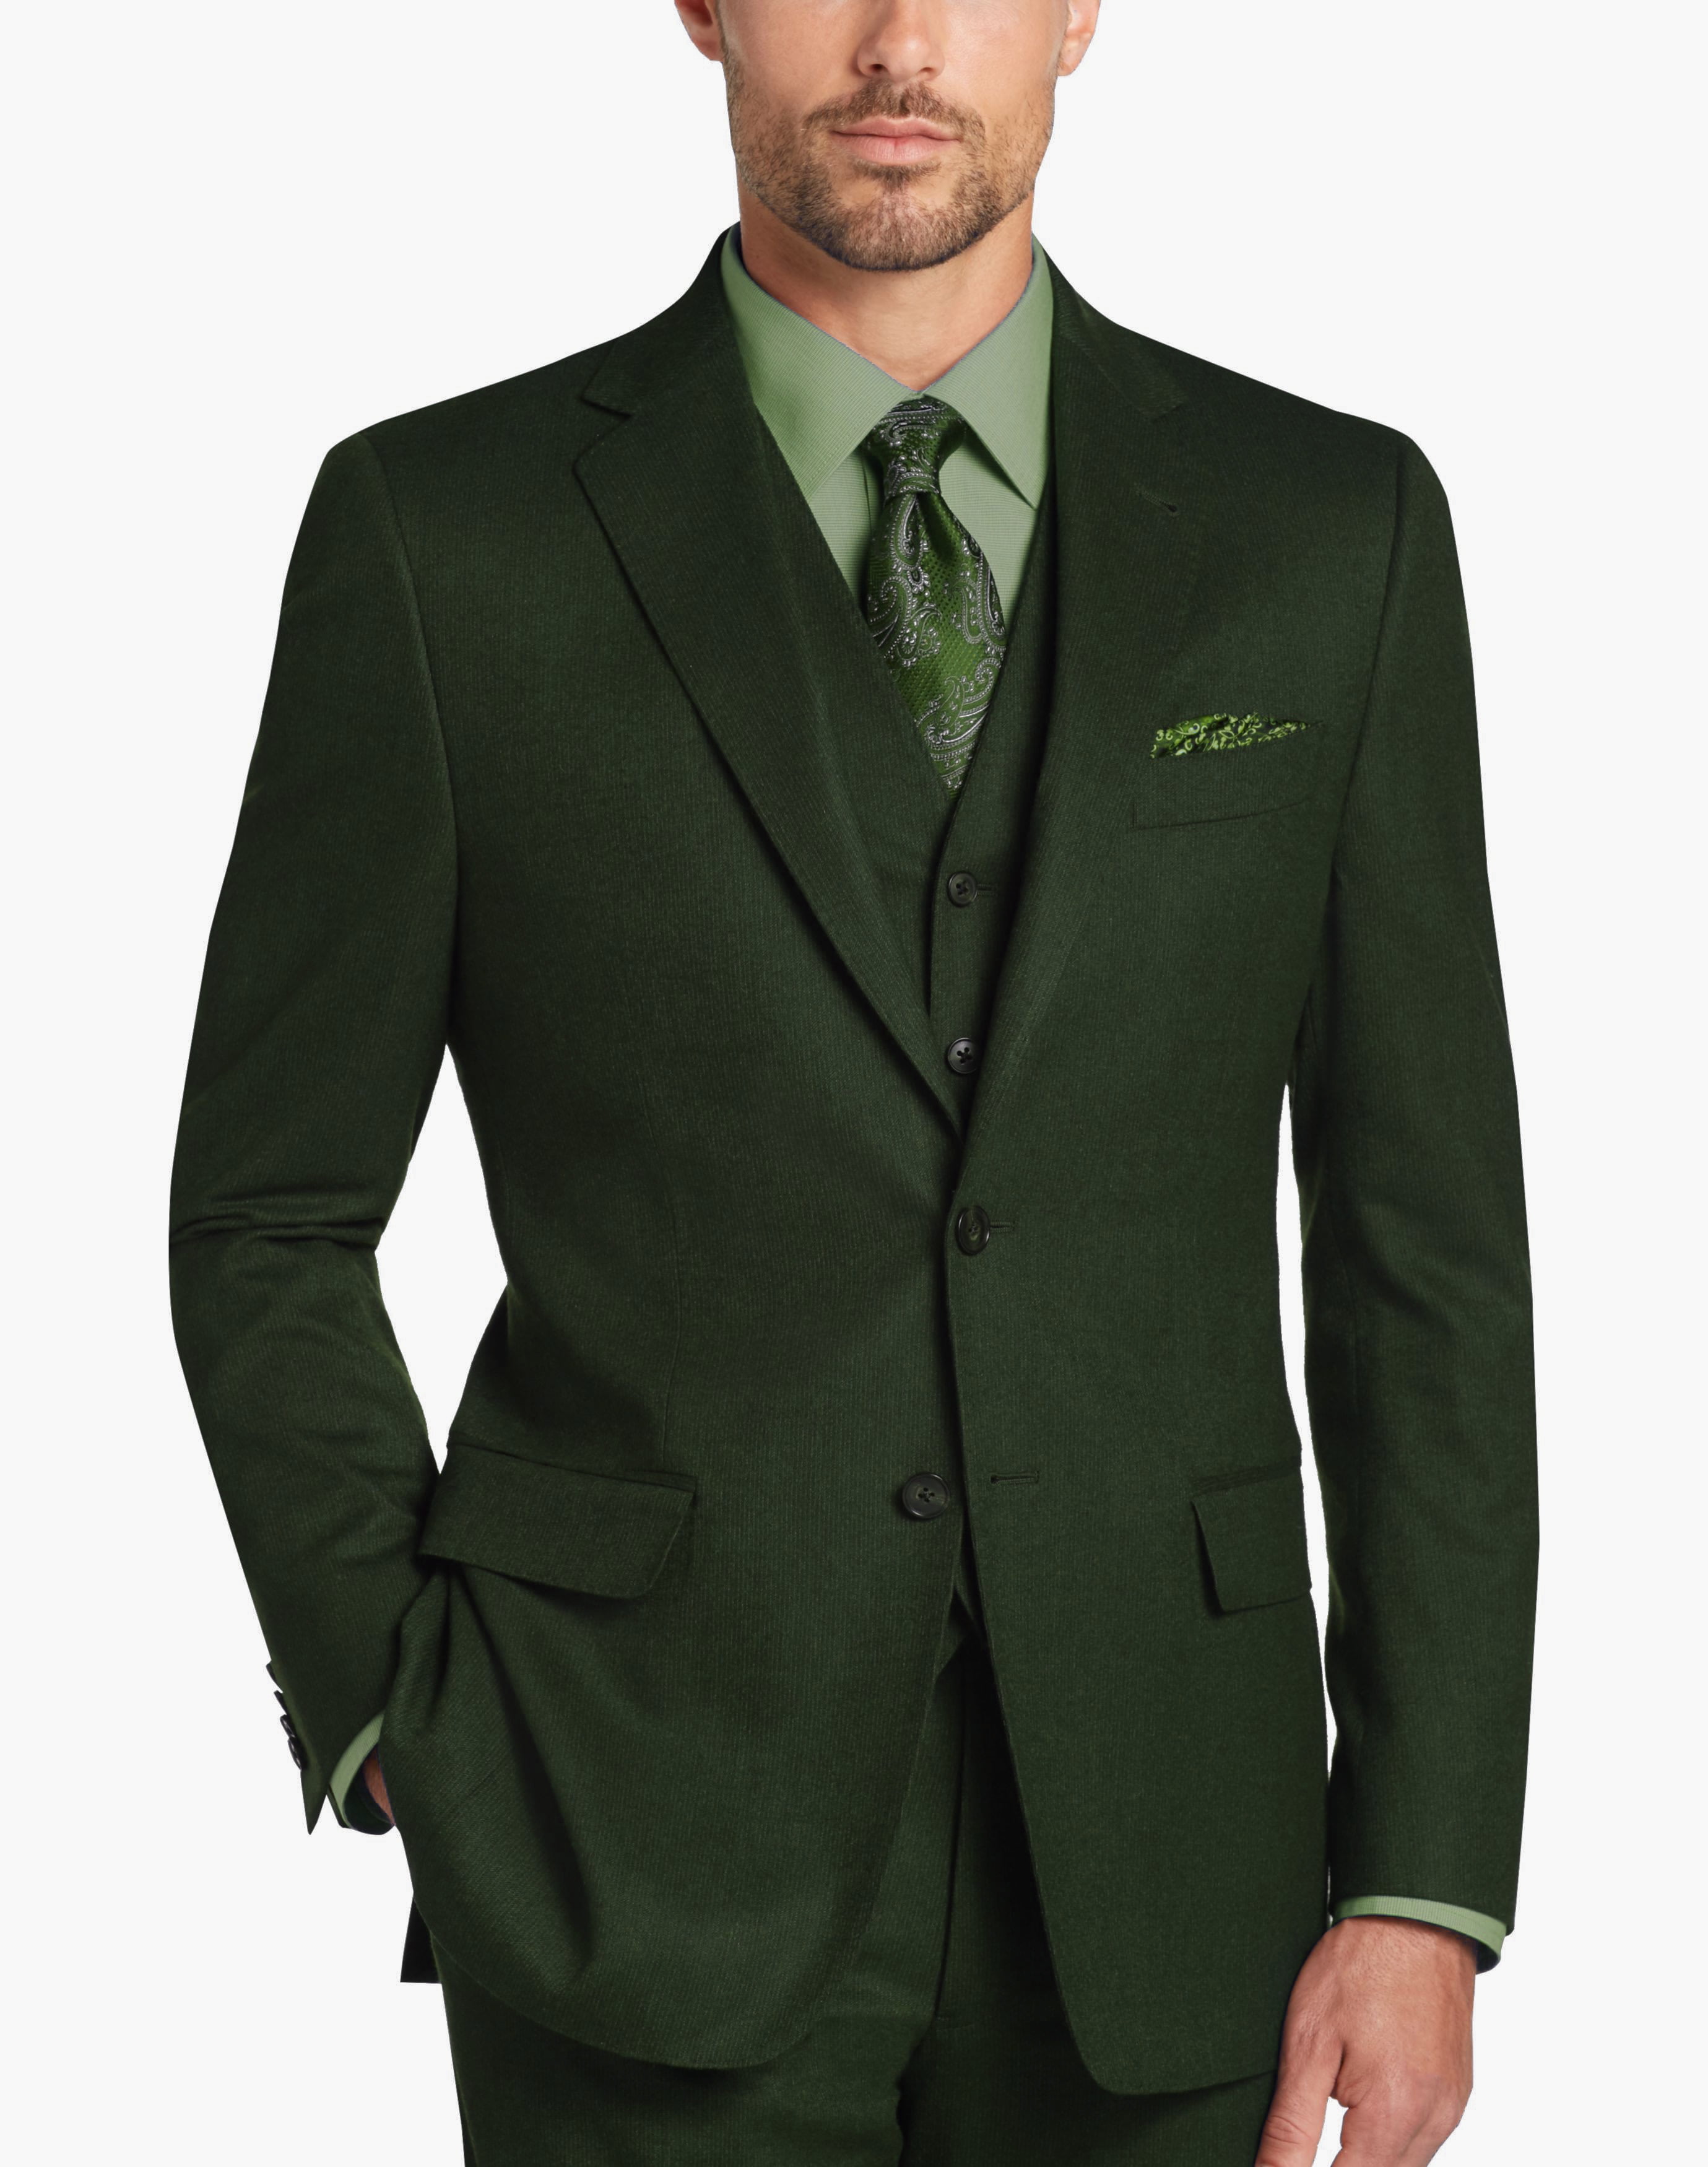 Olive Green Check Tweed 3 Piece Suit - Tweedmaker